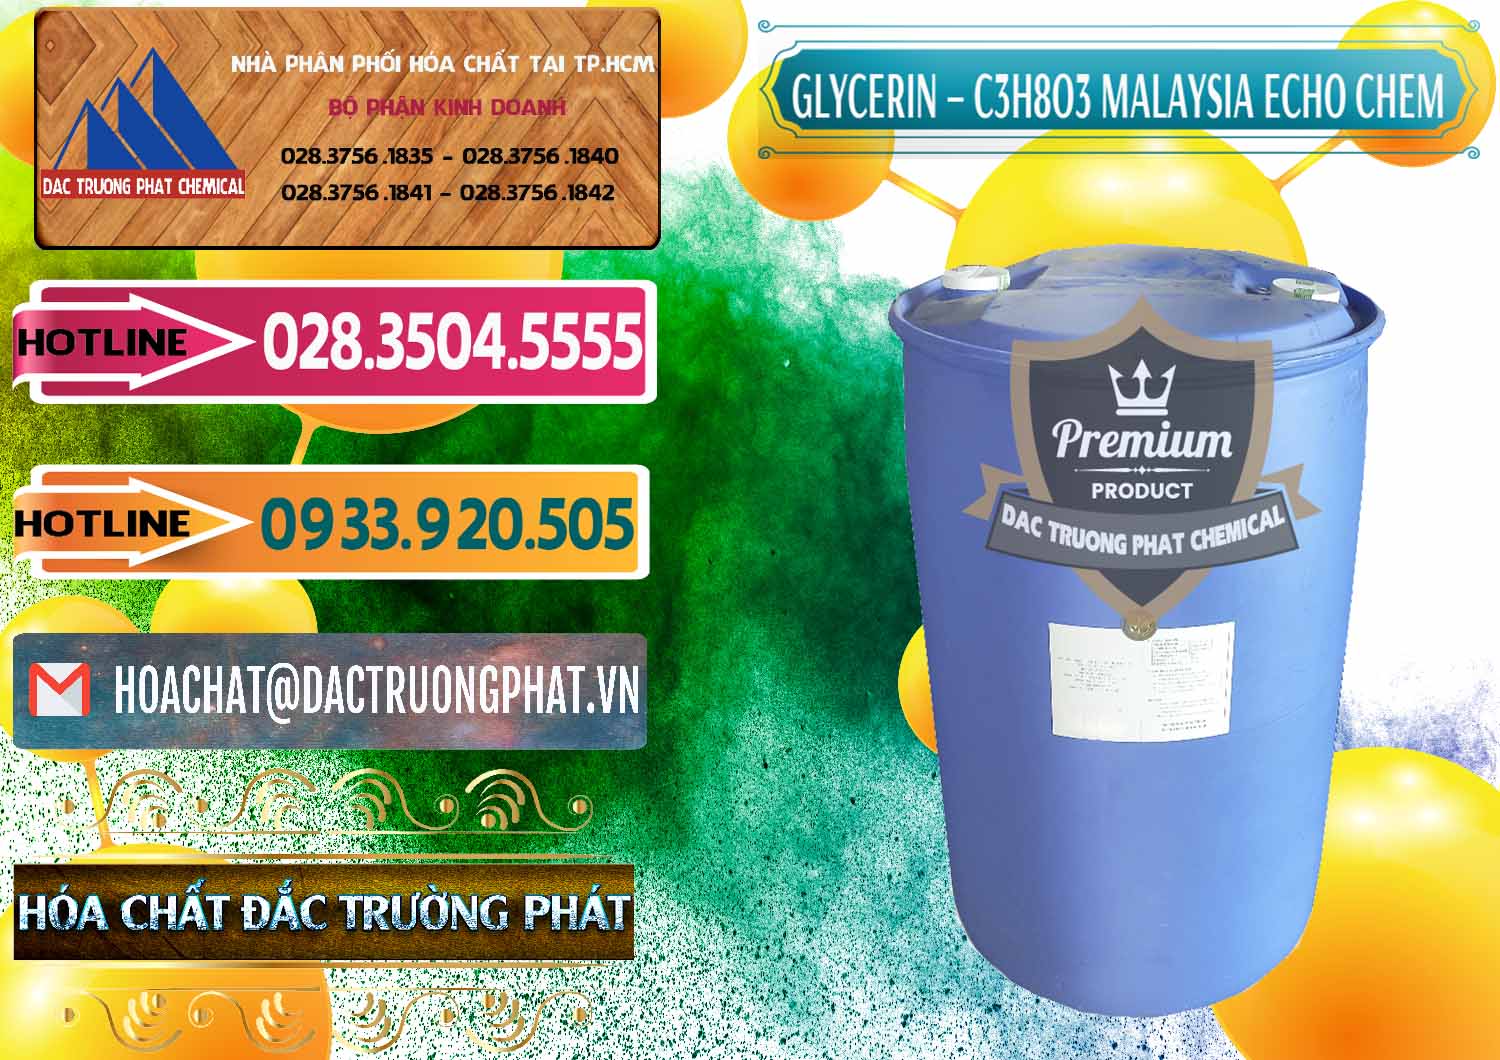 Cty cung ứng - bán C3H8O3 - Glycerin 99.7% Echo Chem Malaysia - 0273 - Nhà phân phối _ cung cấp hóa chất tại TP.HCM - dactruongphat.vn